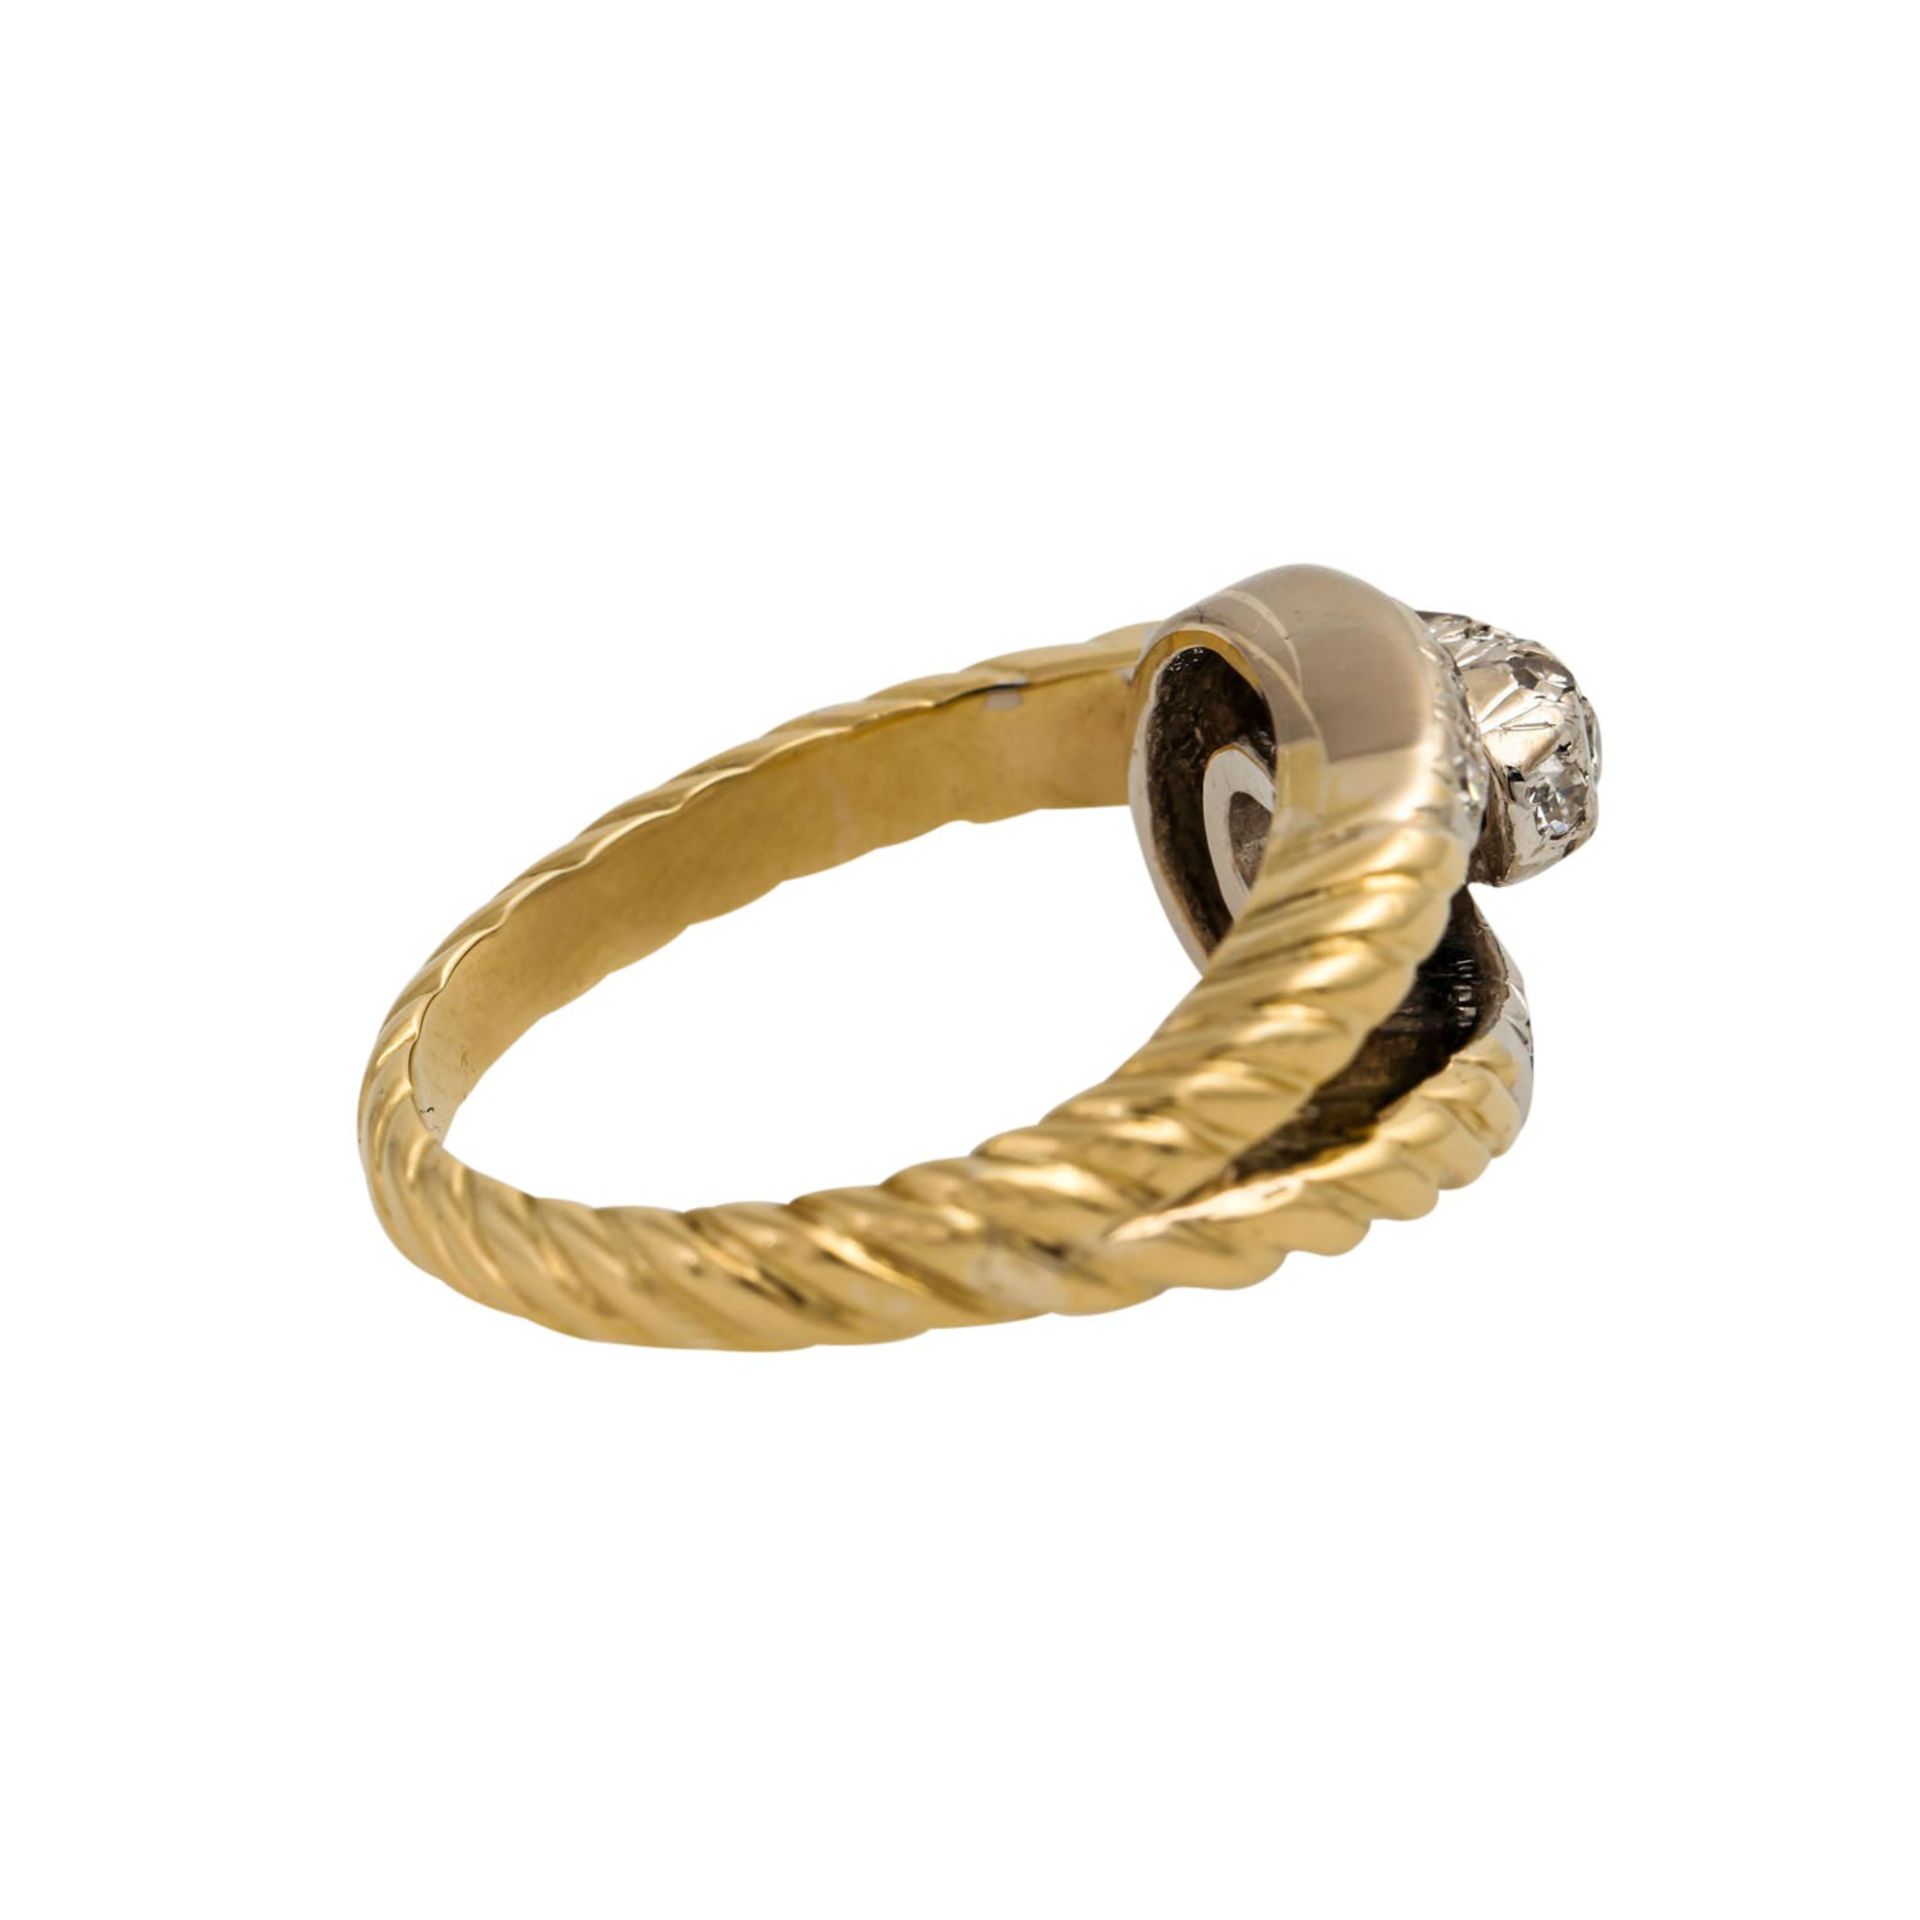 Ring mit Achtkantdiamanten zus. ca. 0,30 ct, gute Farbe u. Reinheit, GG 14K teilw. rho - Bild 3 aus 5